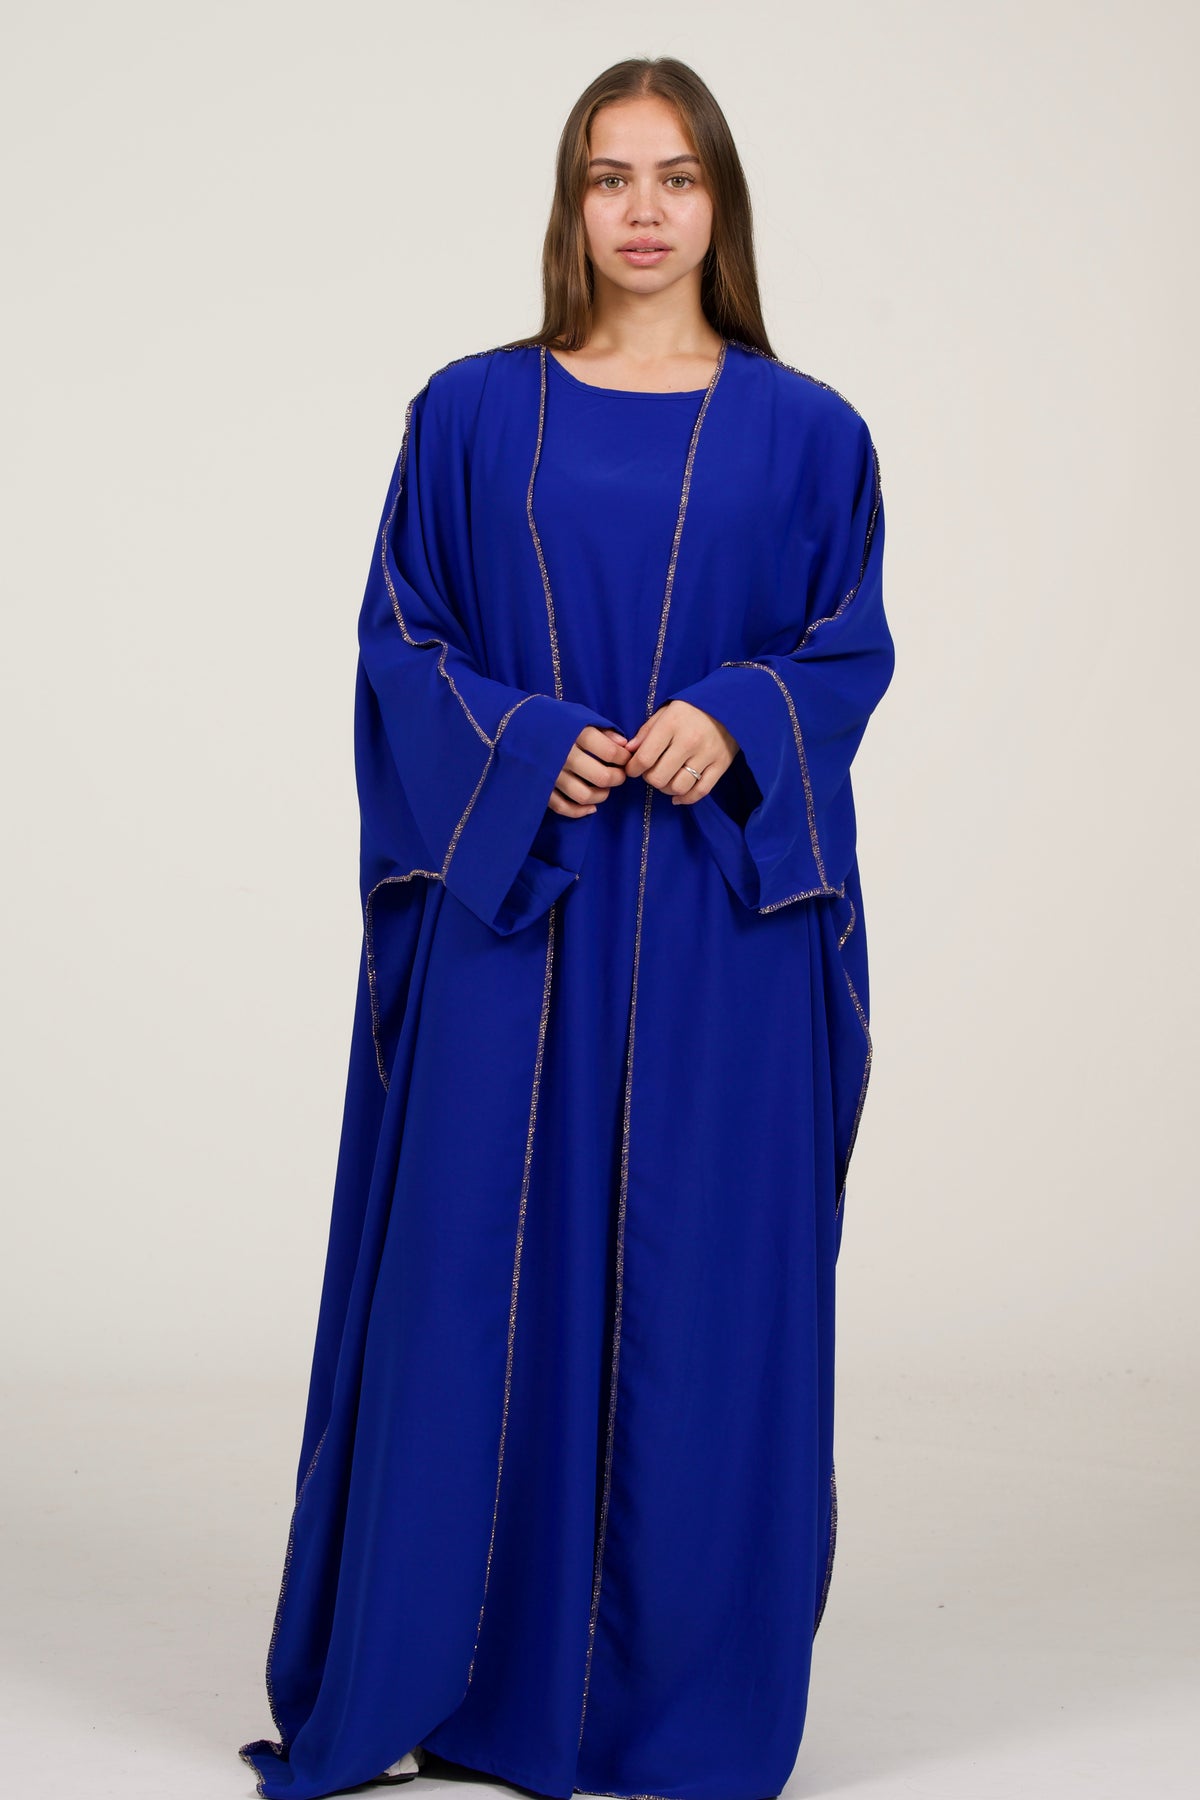 Dark Blue Abaya Set With Golden Details